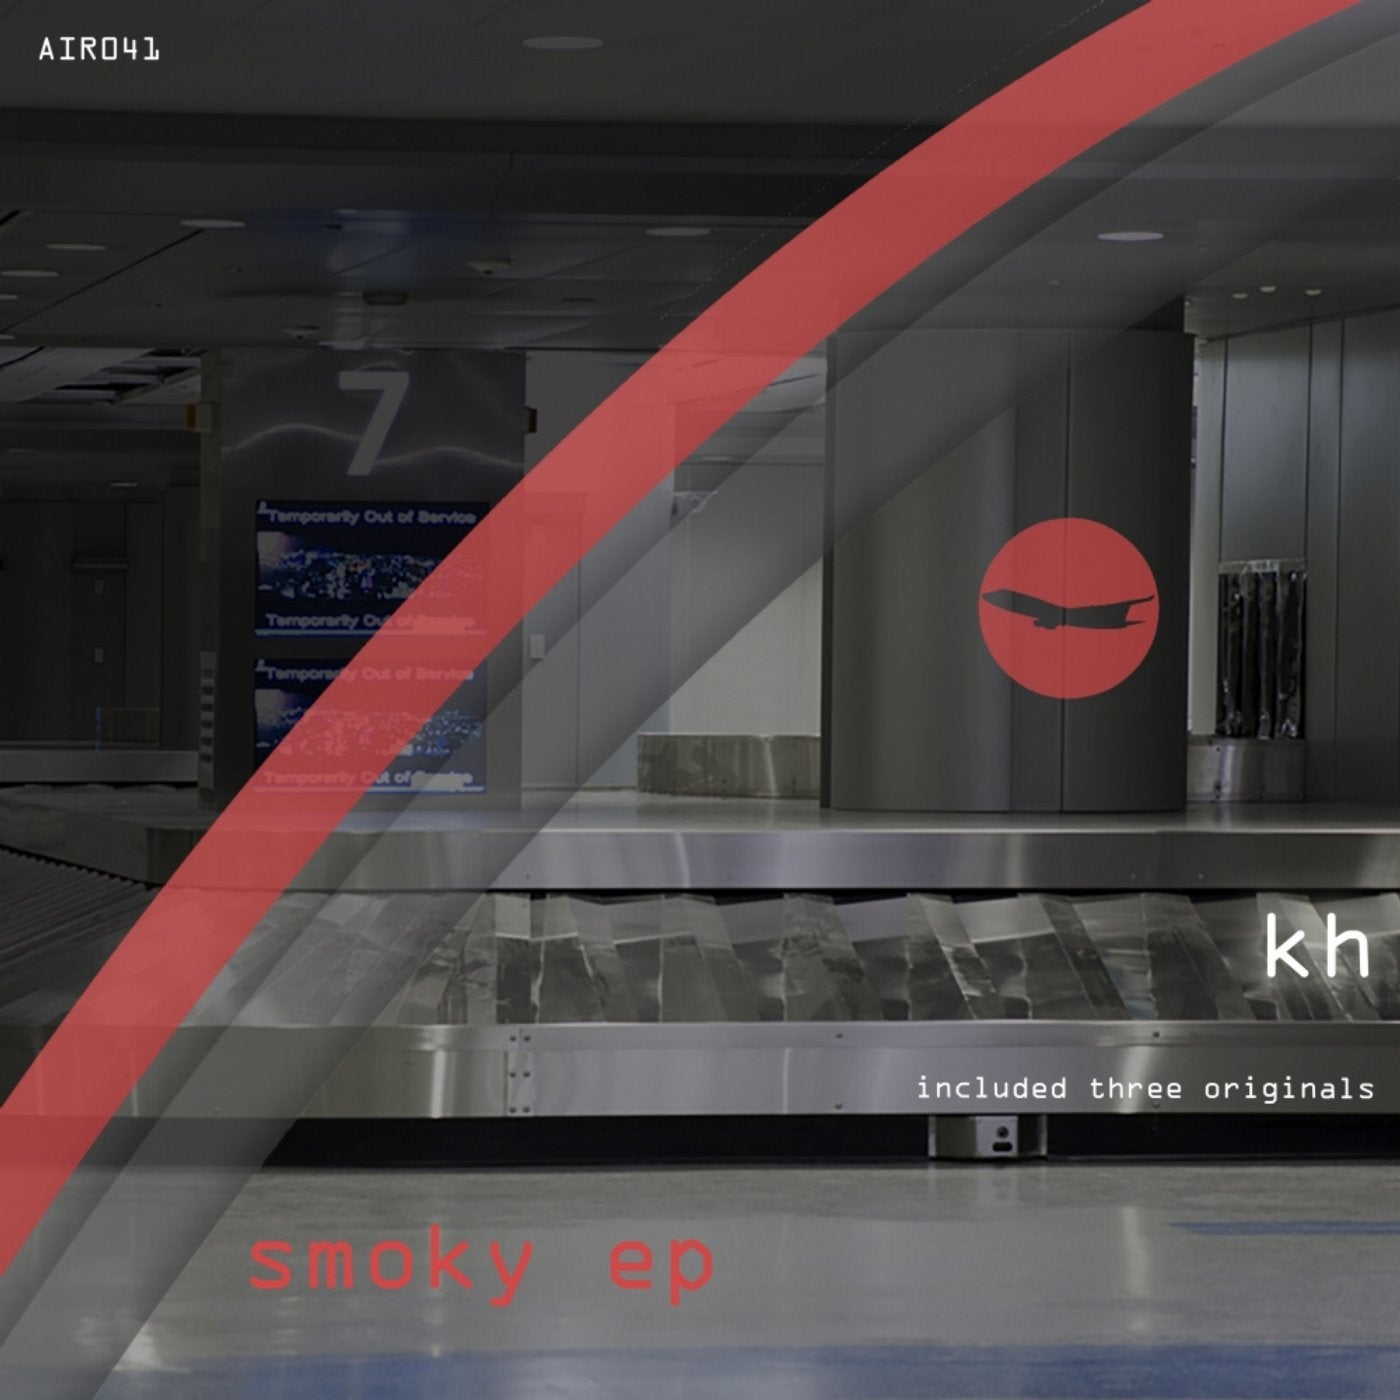 Smoky EP